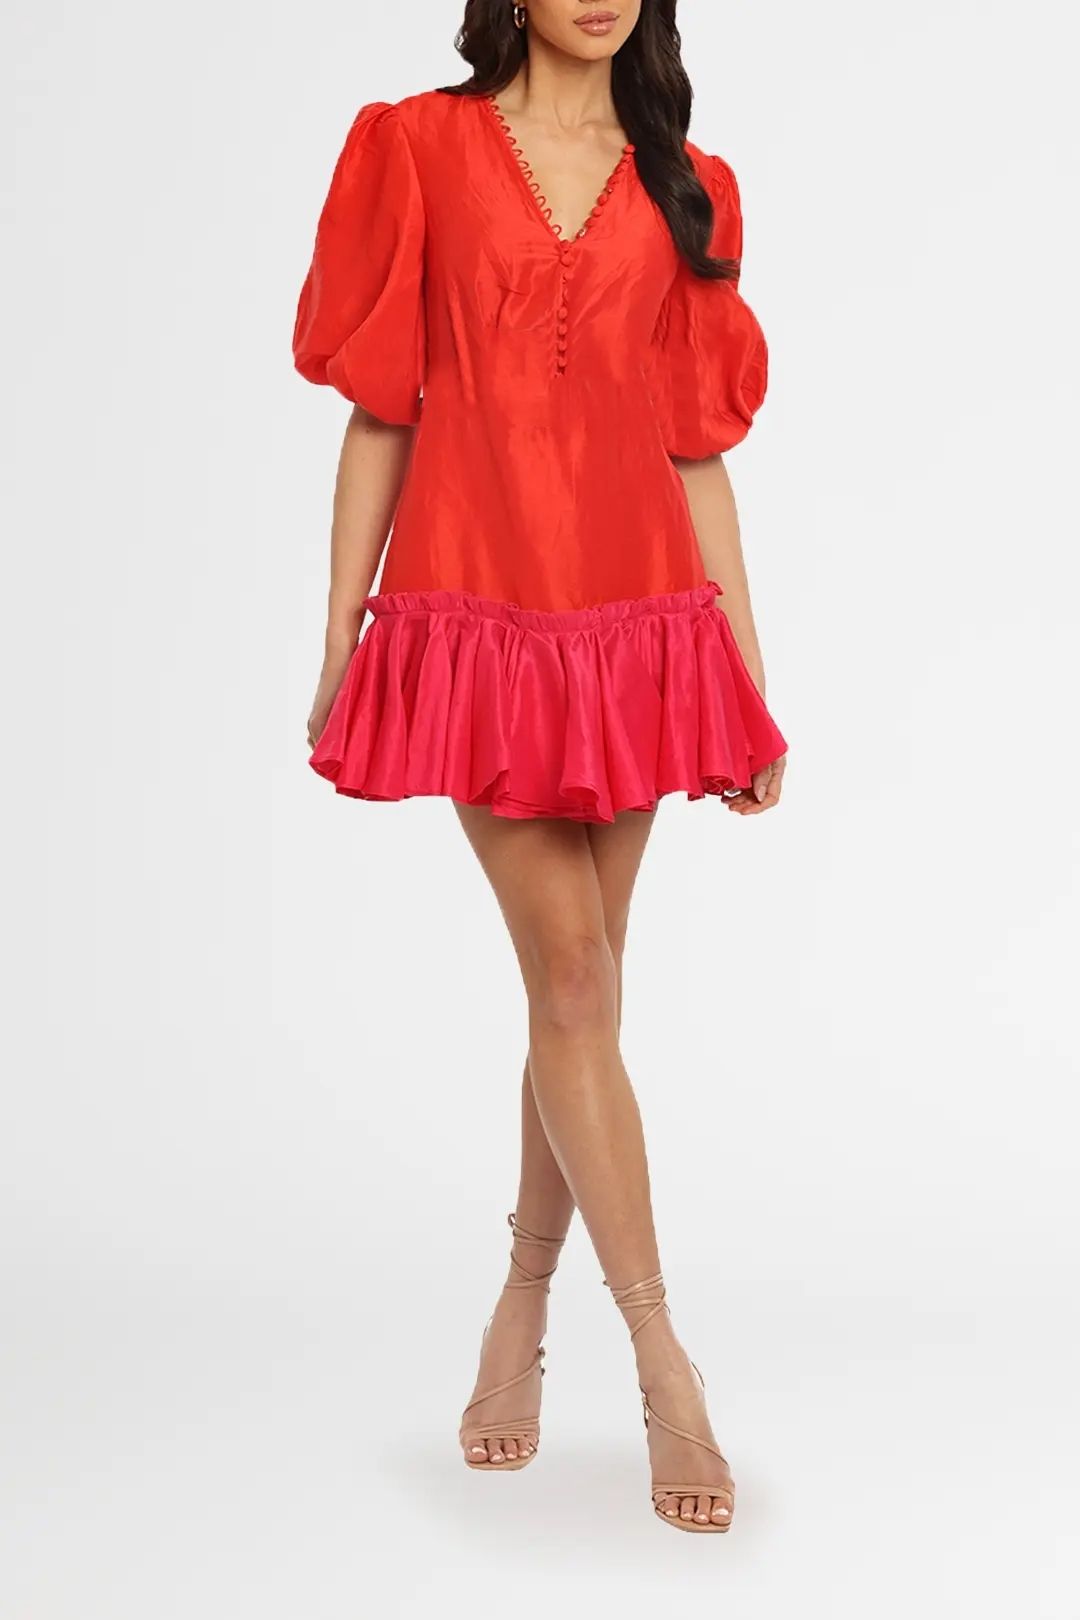 Leo Lin Fuchsia Rose Mini Dress